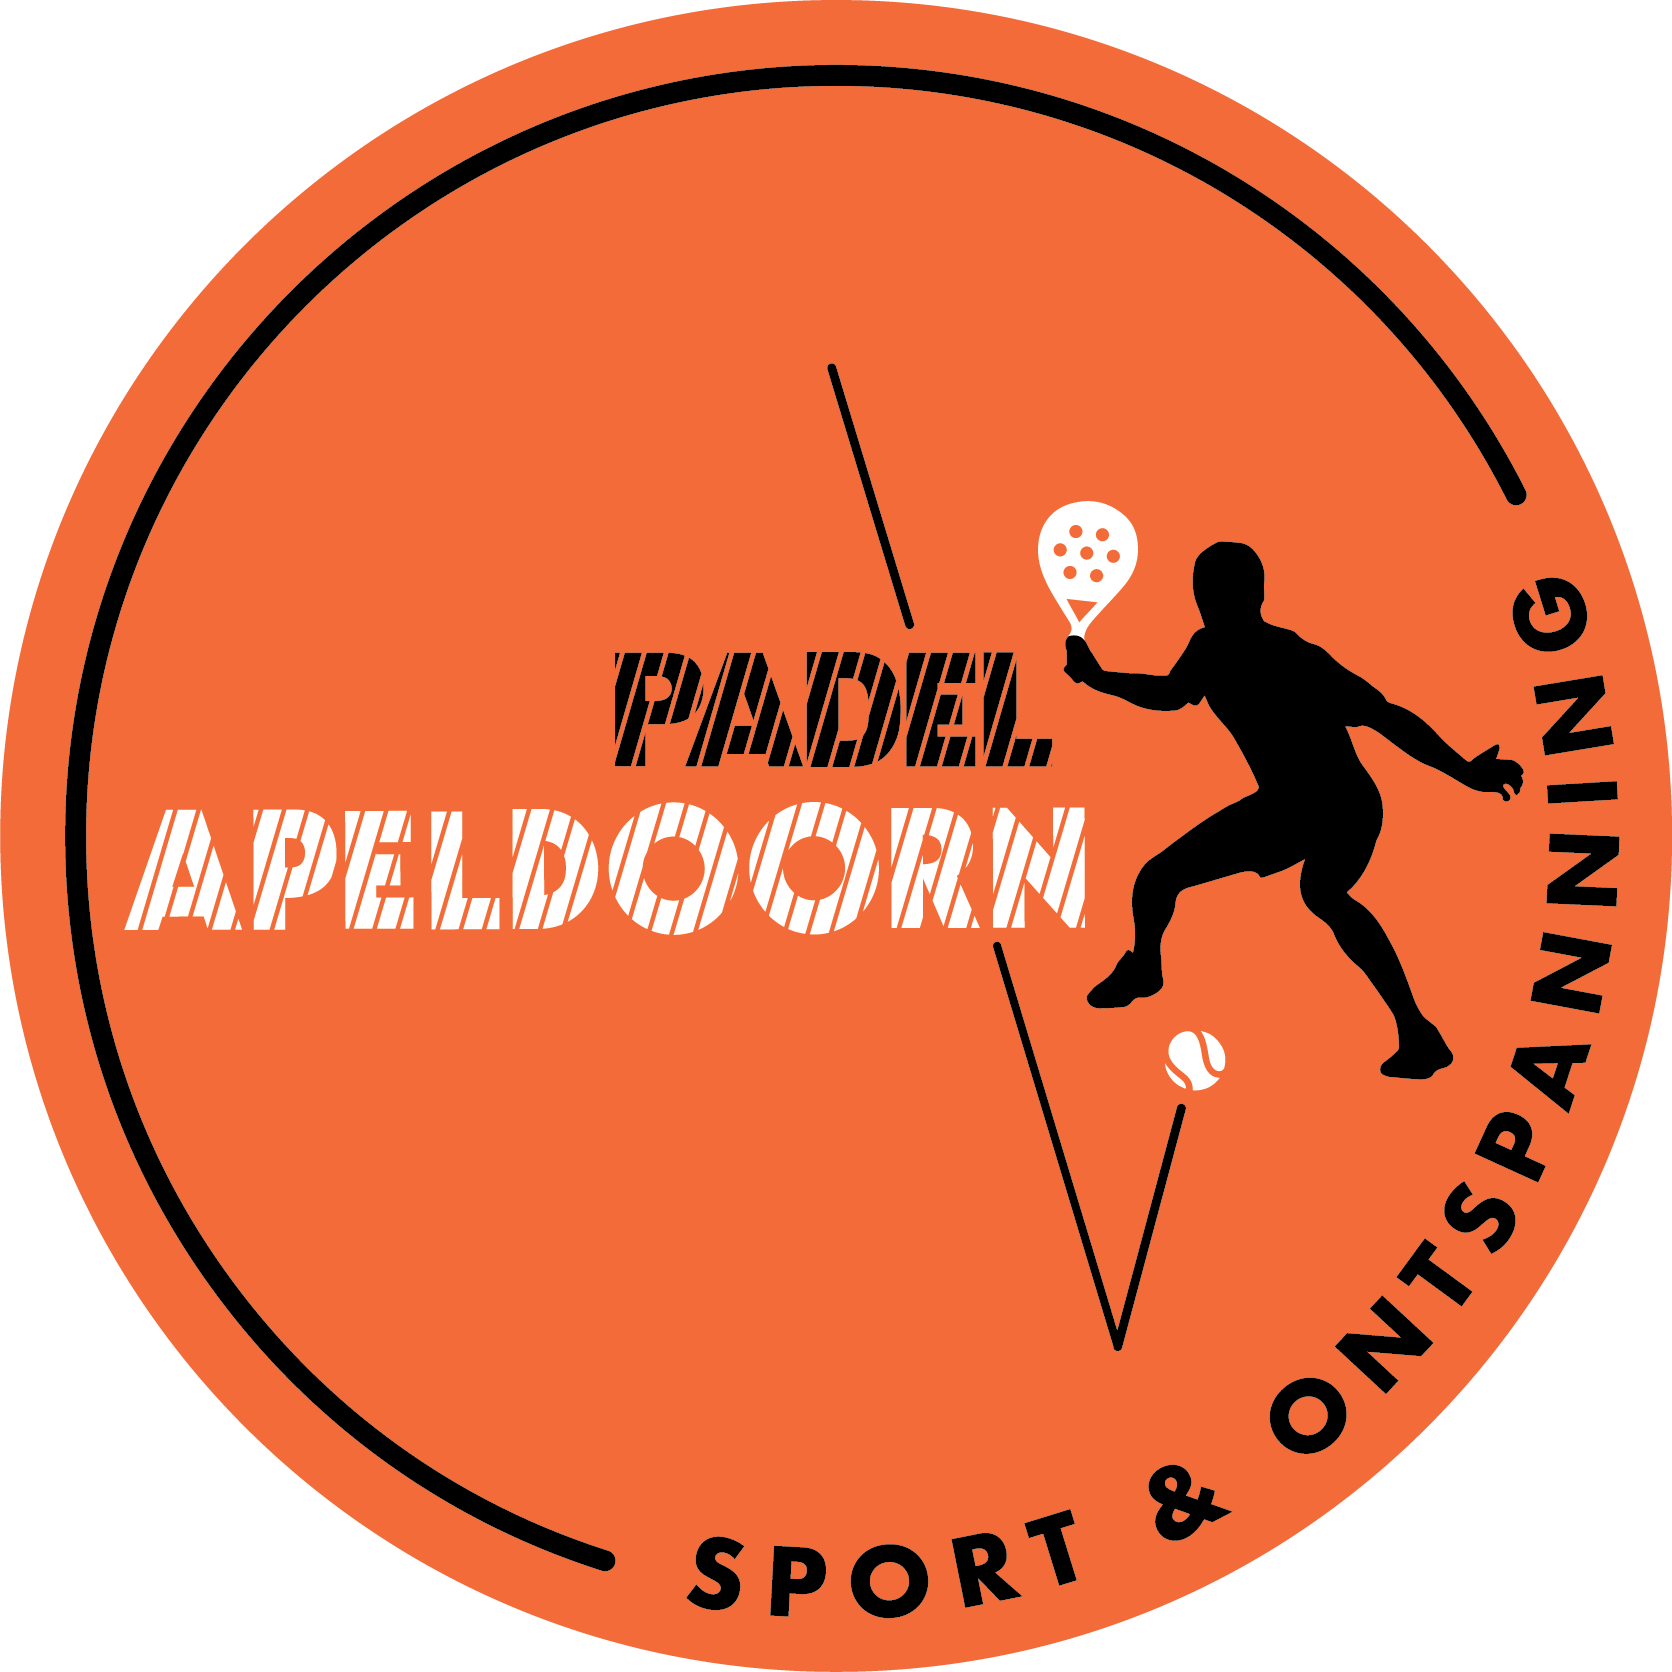 Profile image of venue Padel Apeldoorn